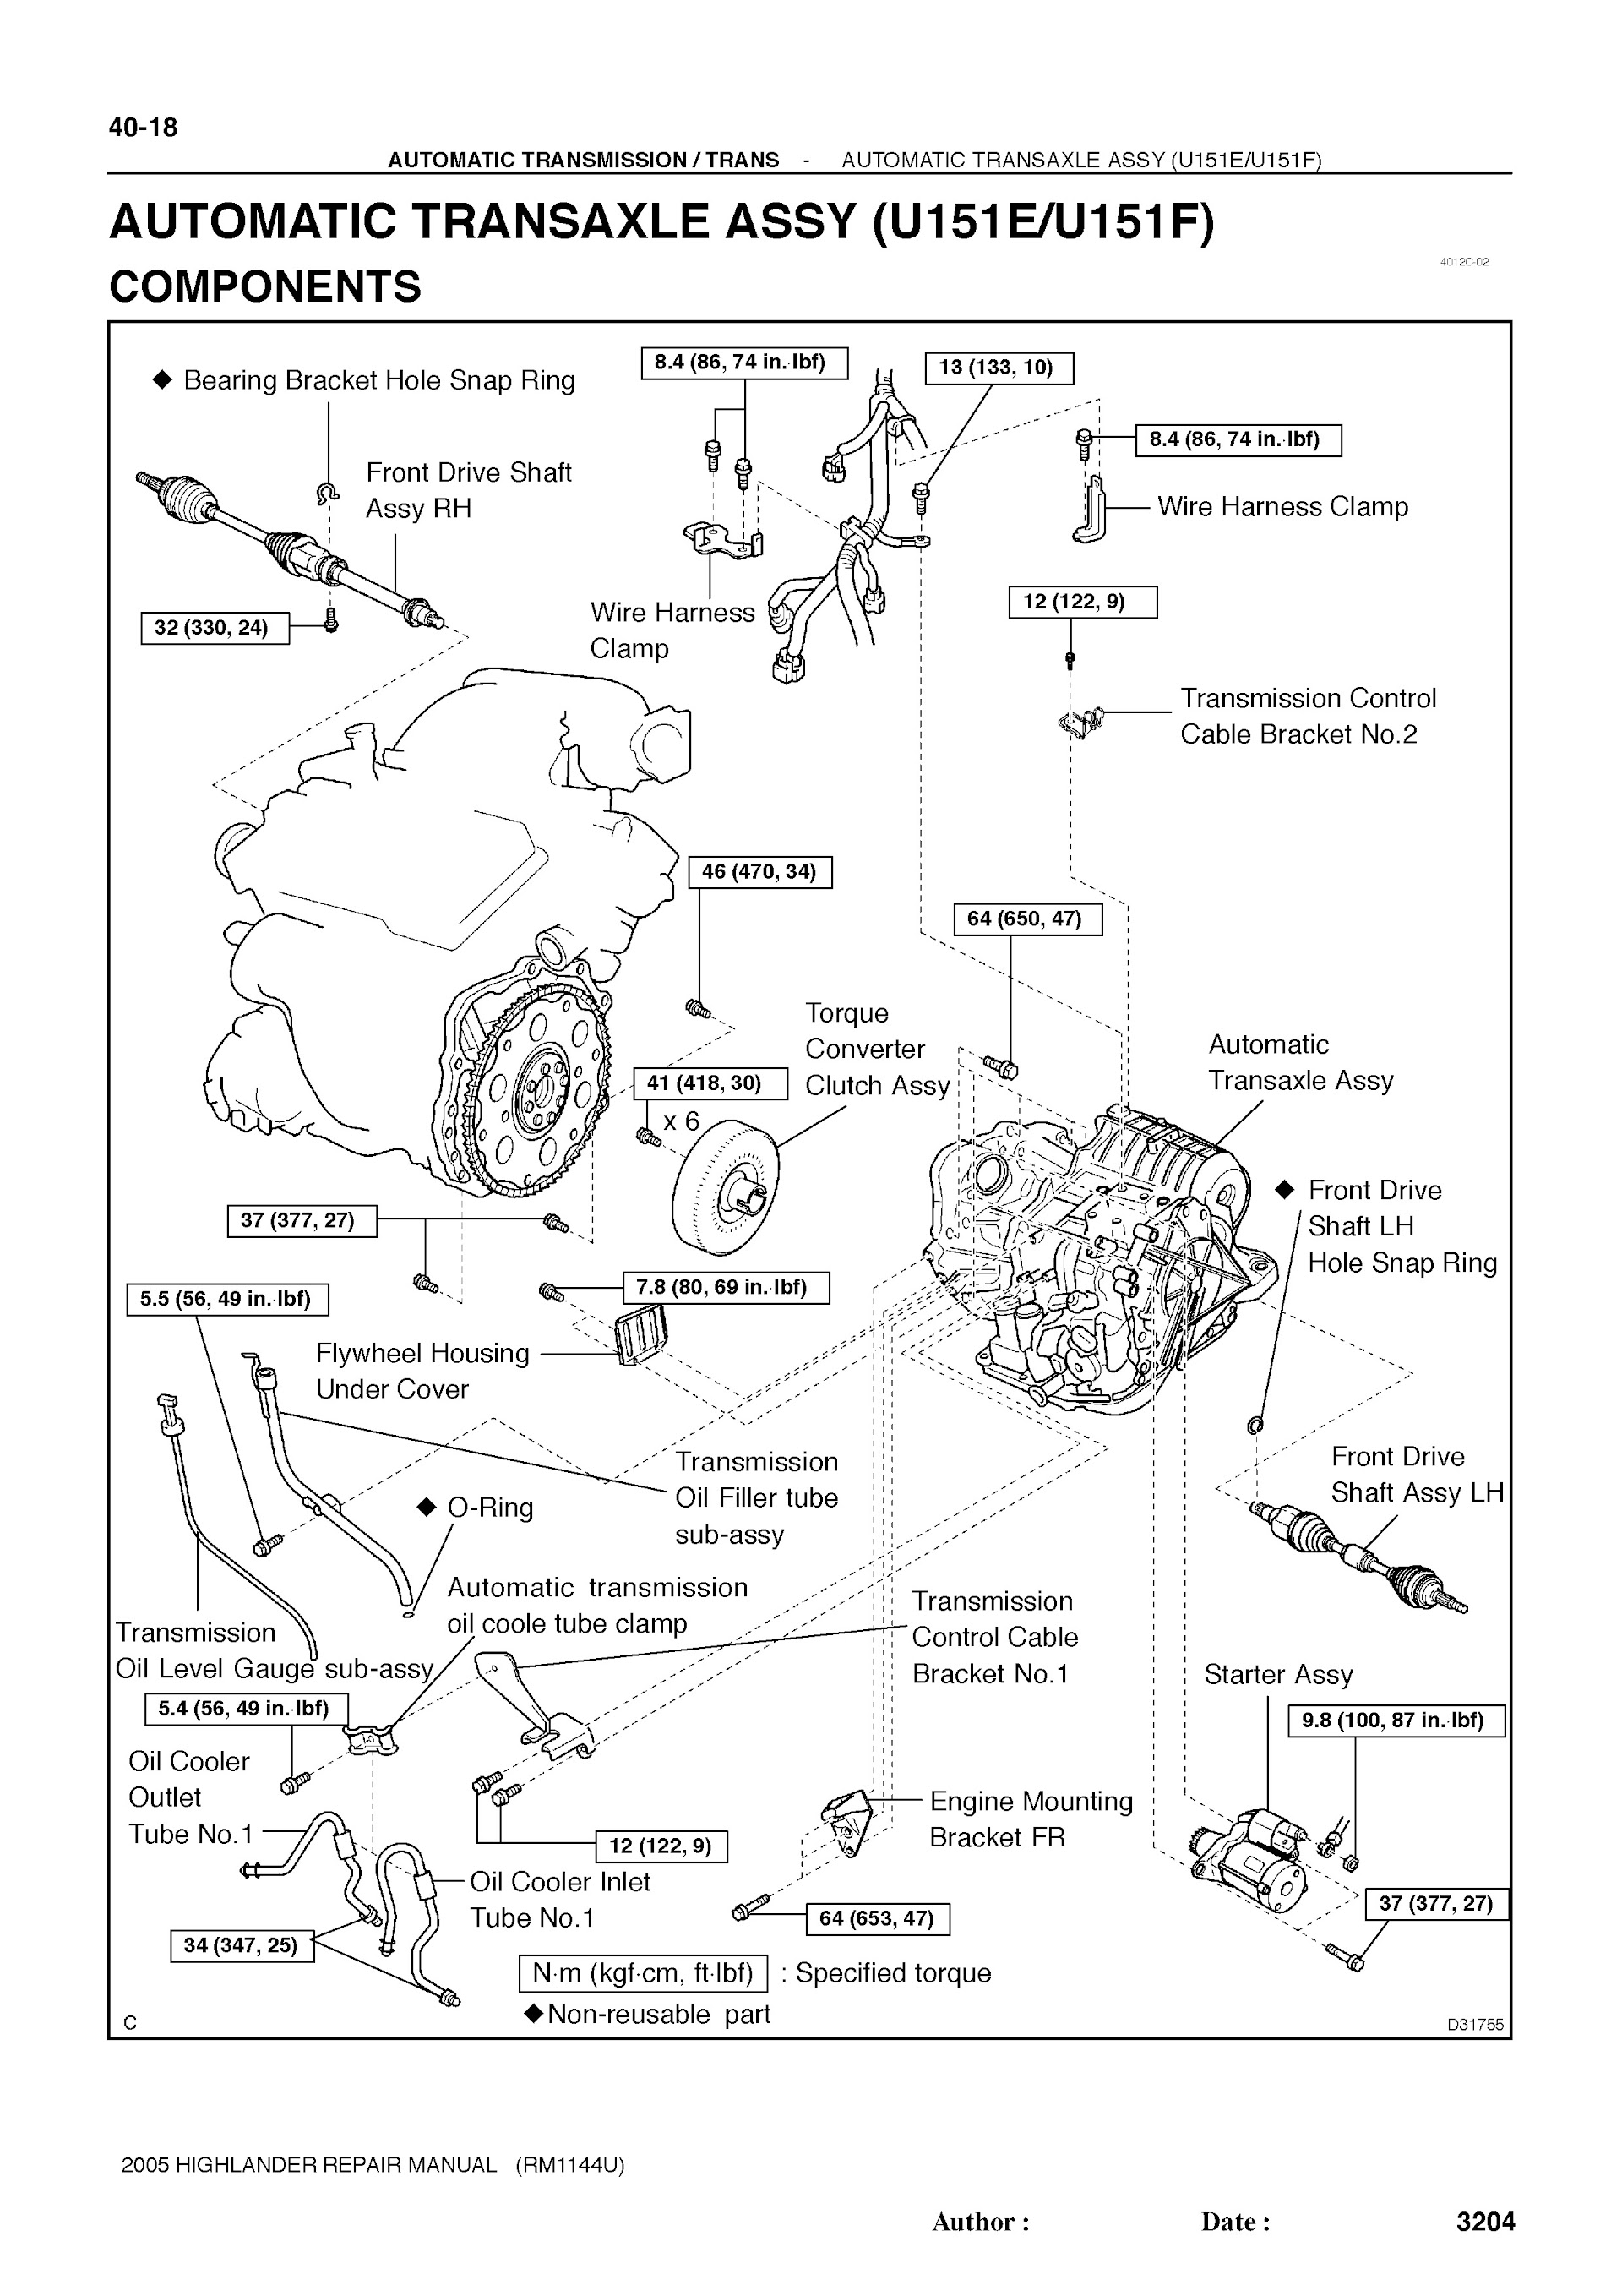 2001-2007 Toyota Highlander Repair Manual, Automatic Transaxle Assy (U151E/U151F)